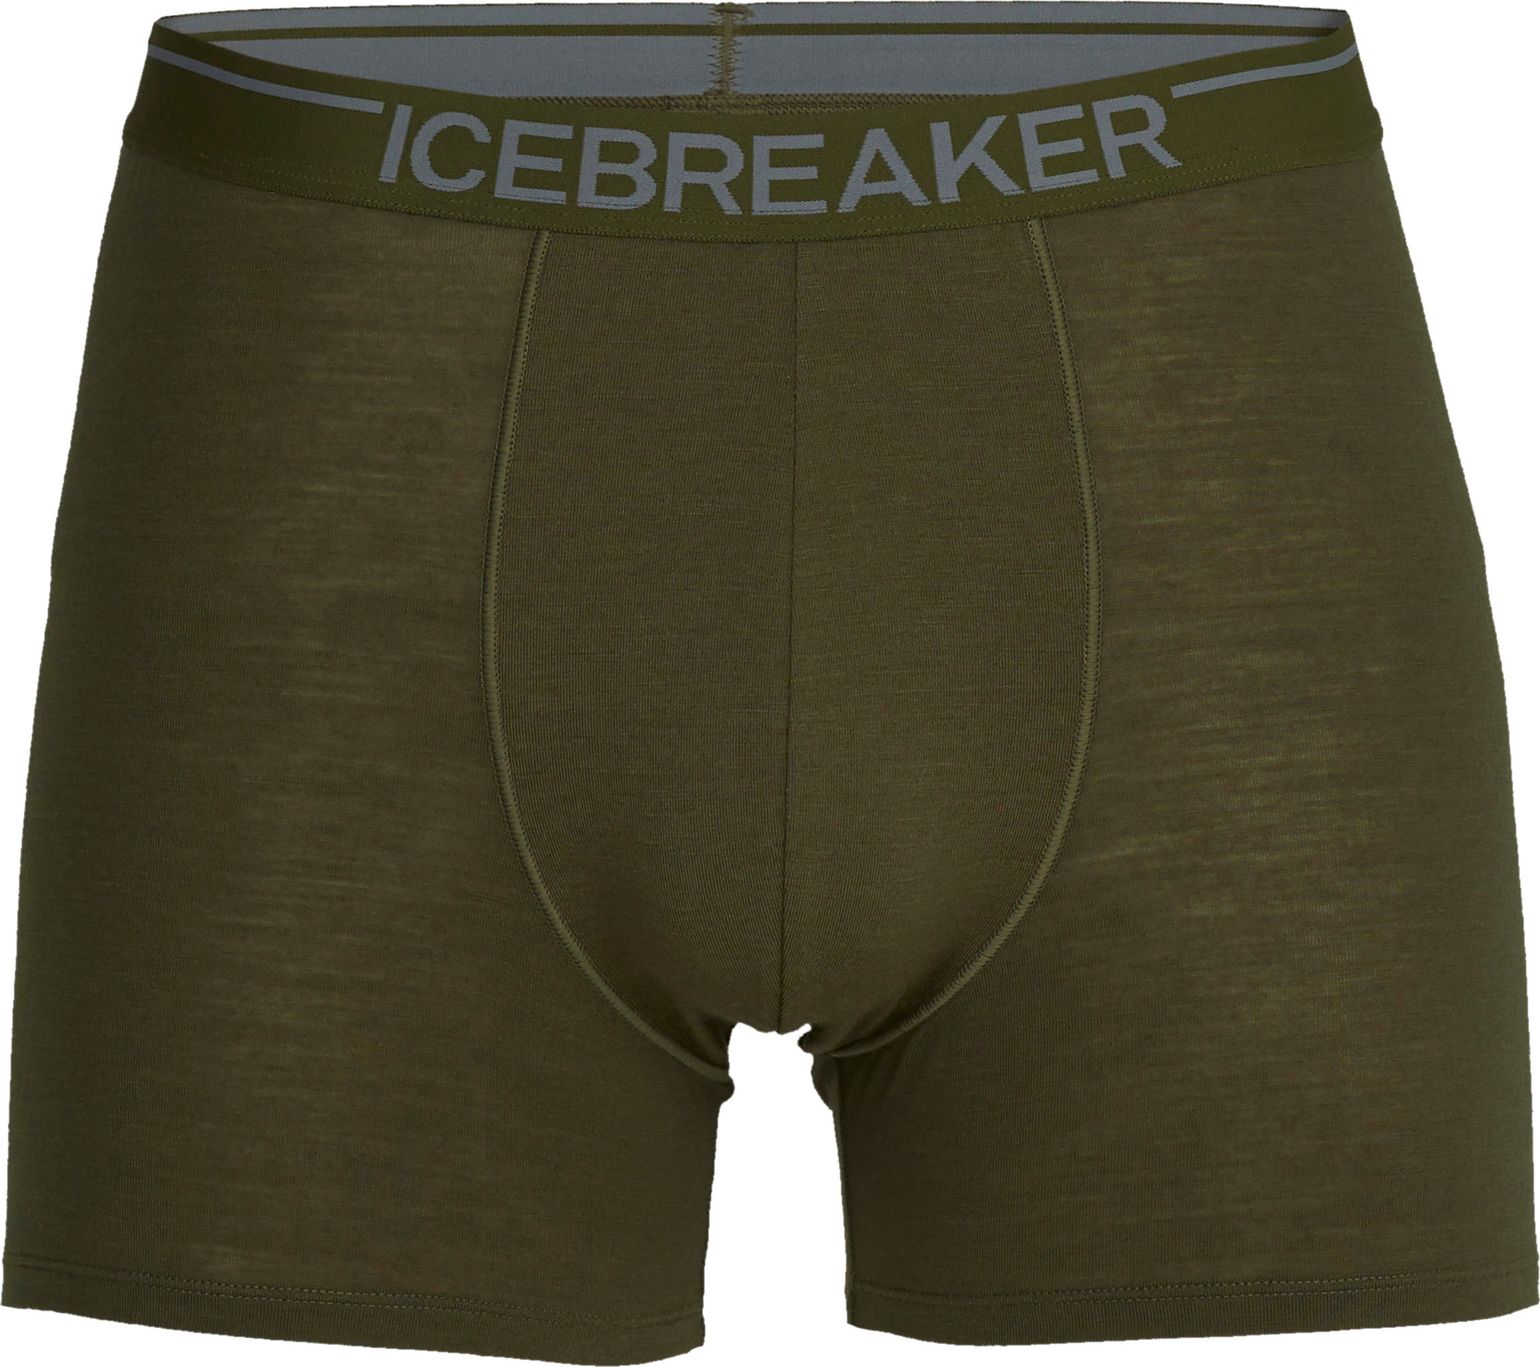 Icebreaker Men's Anatomica Boxers Loden